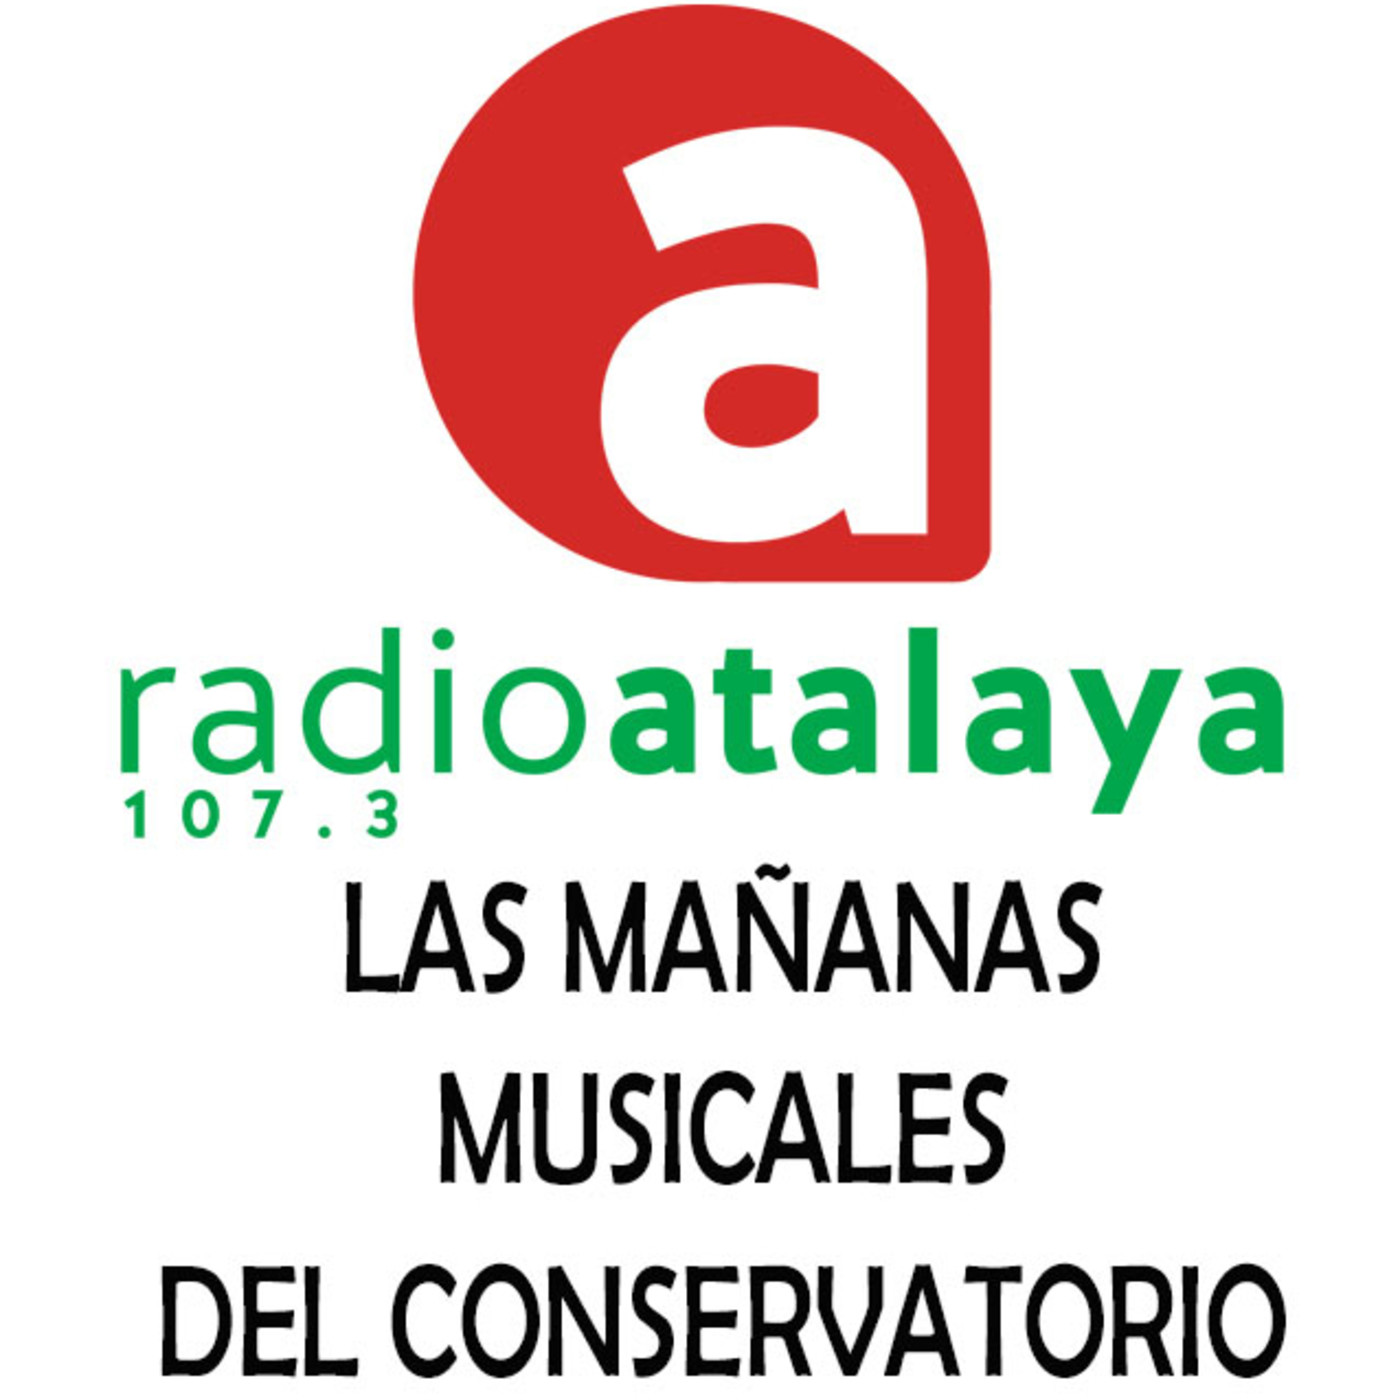 Las Mañanas Musicales del Conservatorio (16/03/2020)